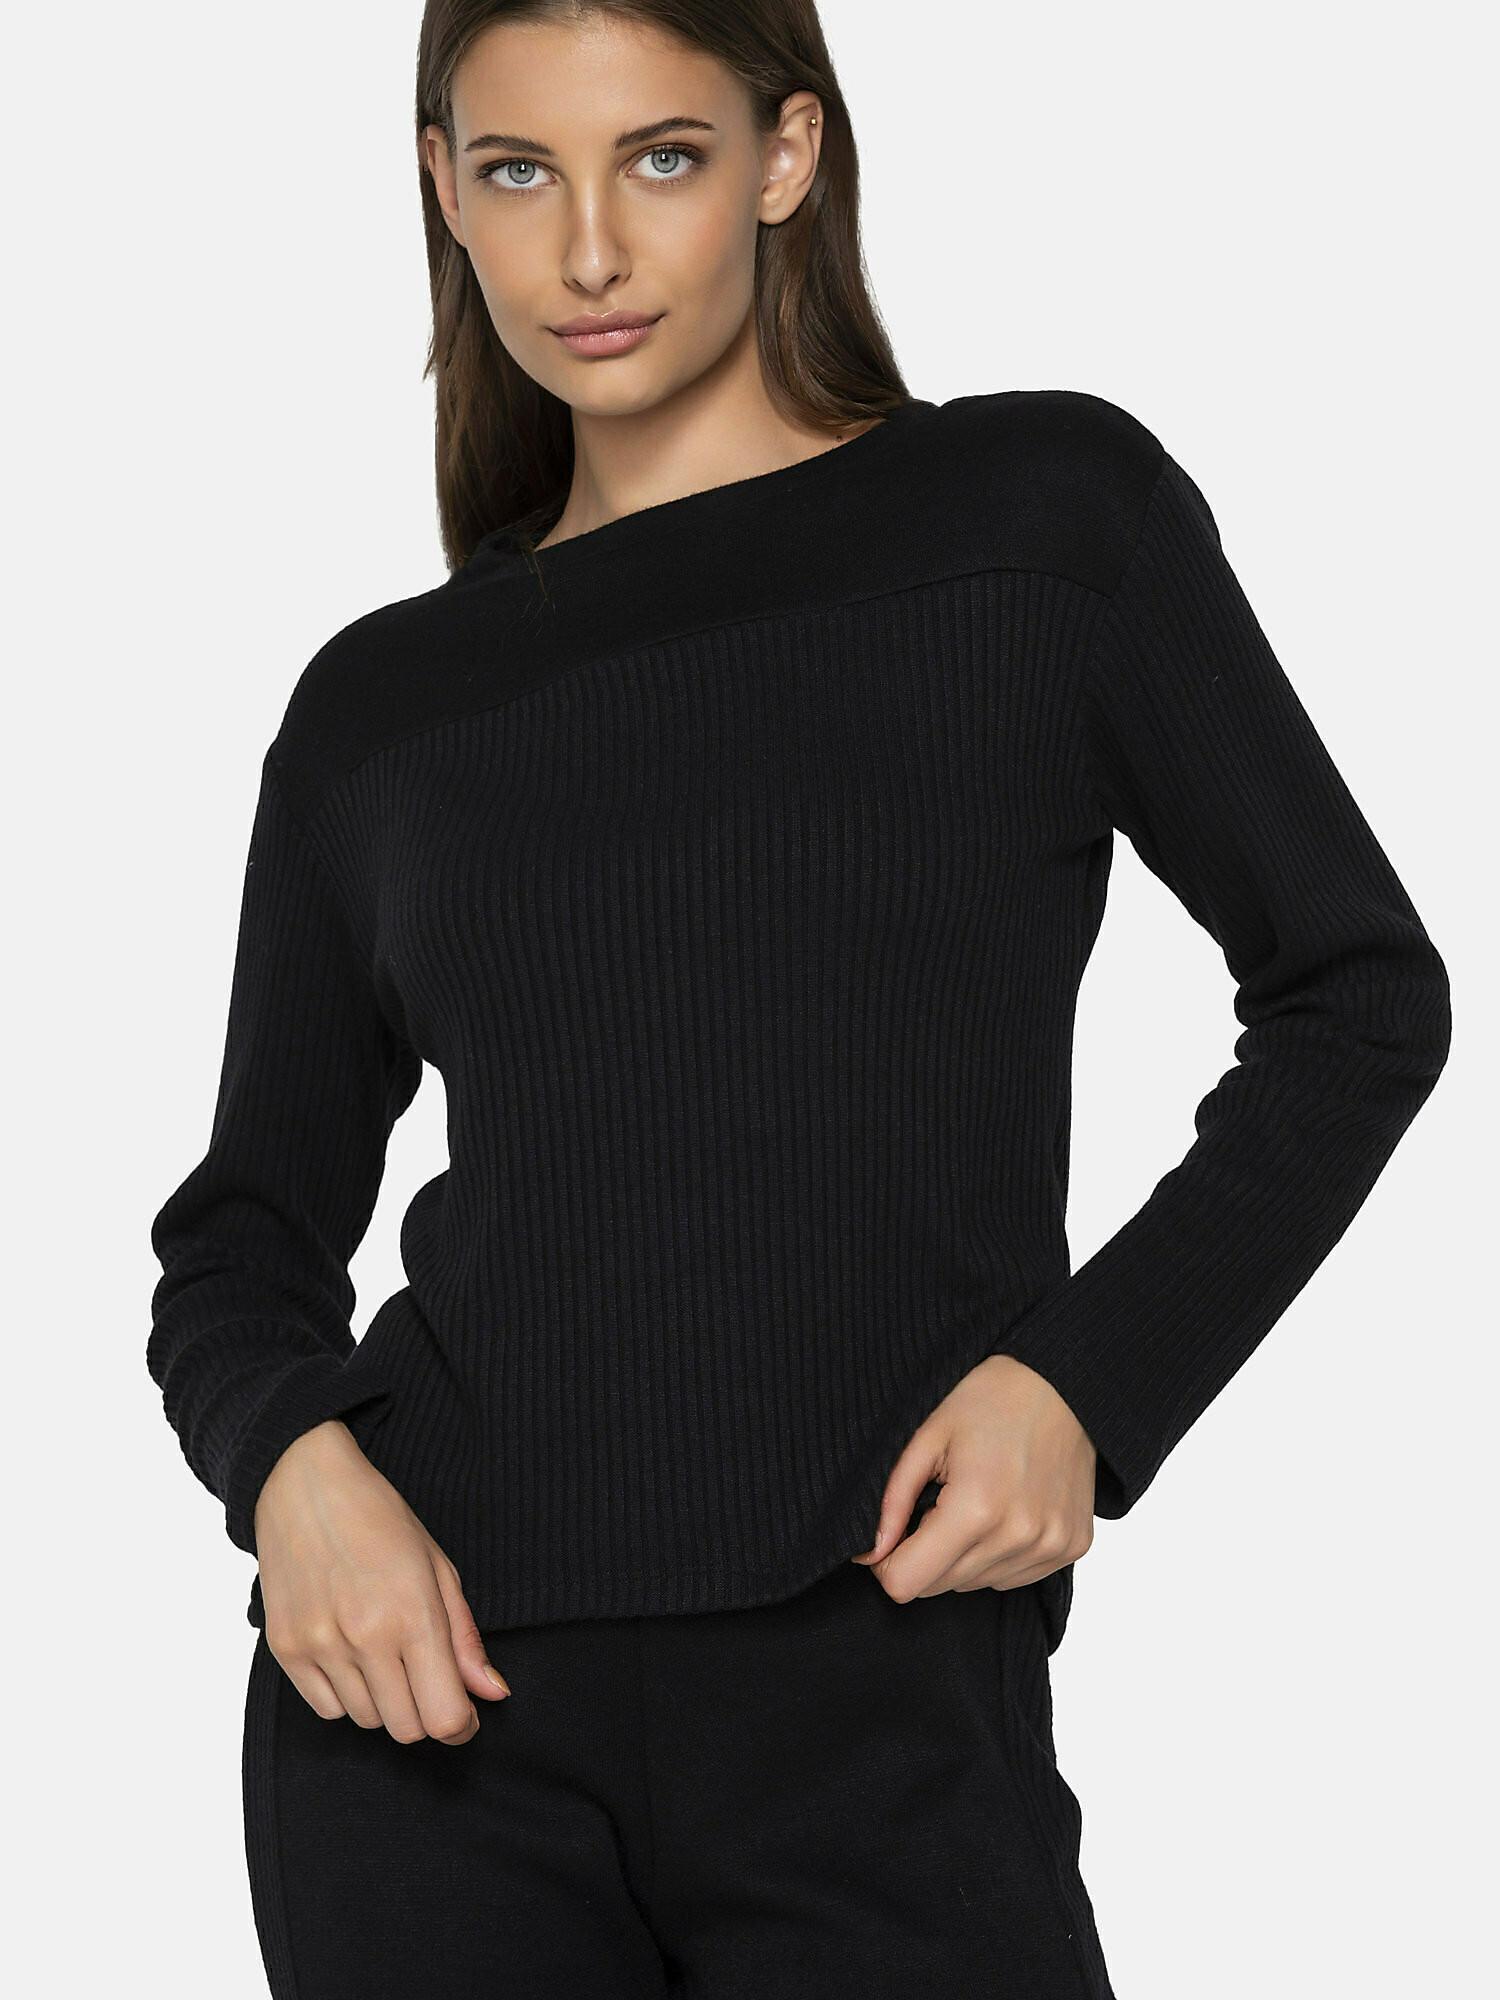 Sweatshirt Connected Damen Schwarz S von Luna